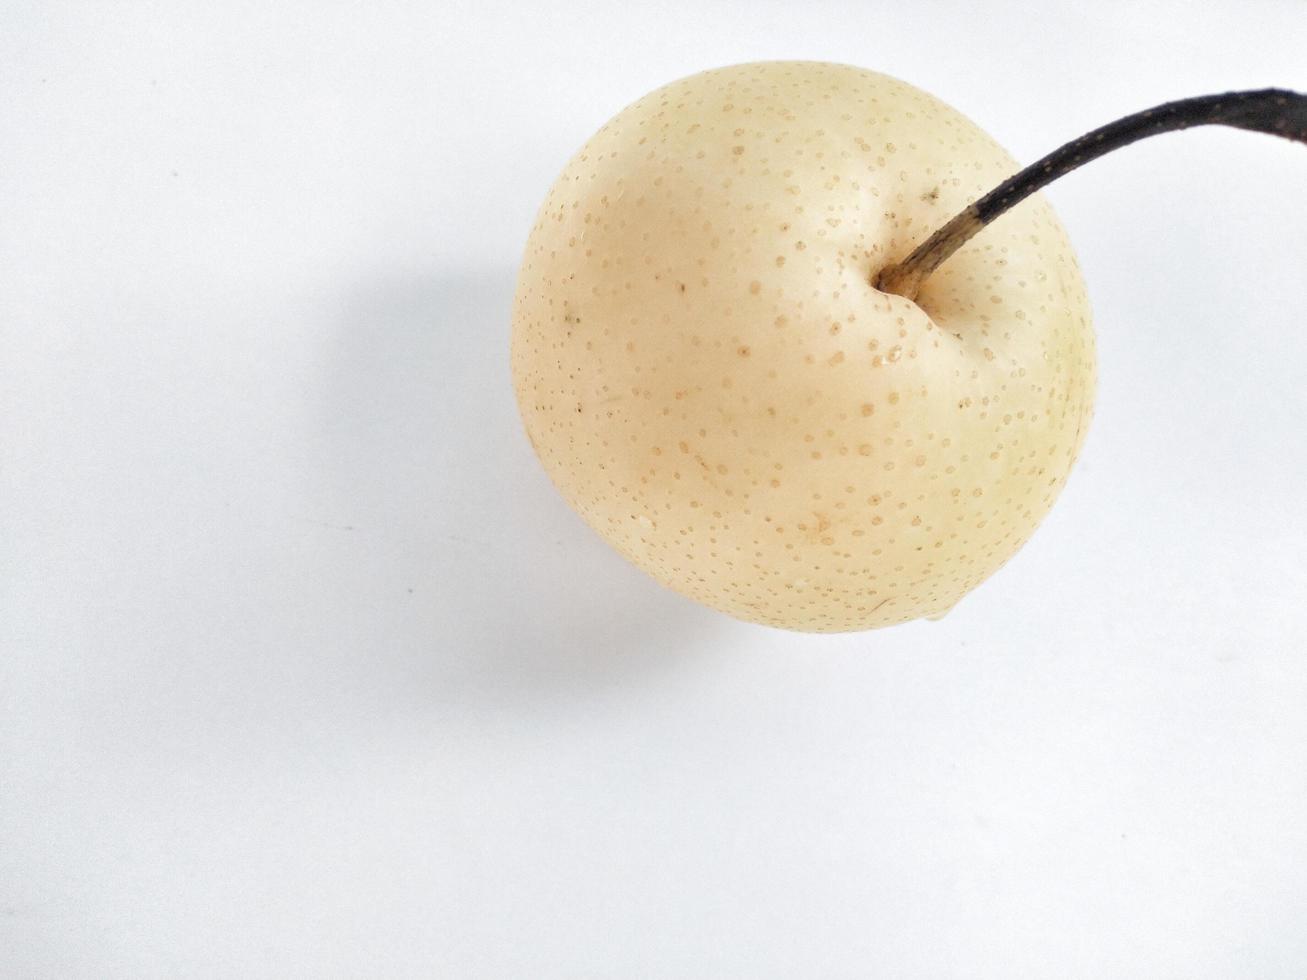 fruta pera amarela fresca isolada no fundo branco com traçado de recorte. uma das melhores peras isoladas que você já viu. foto